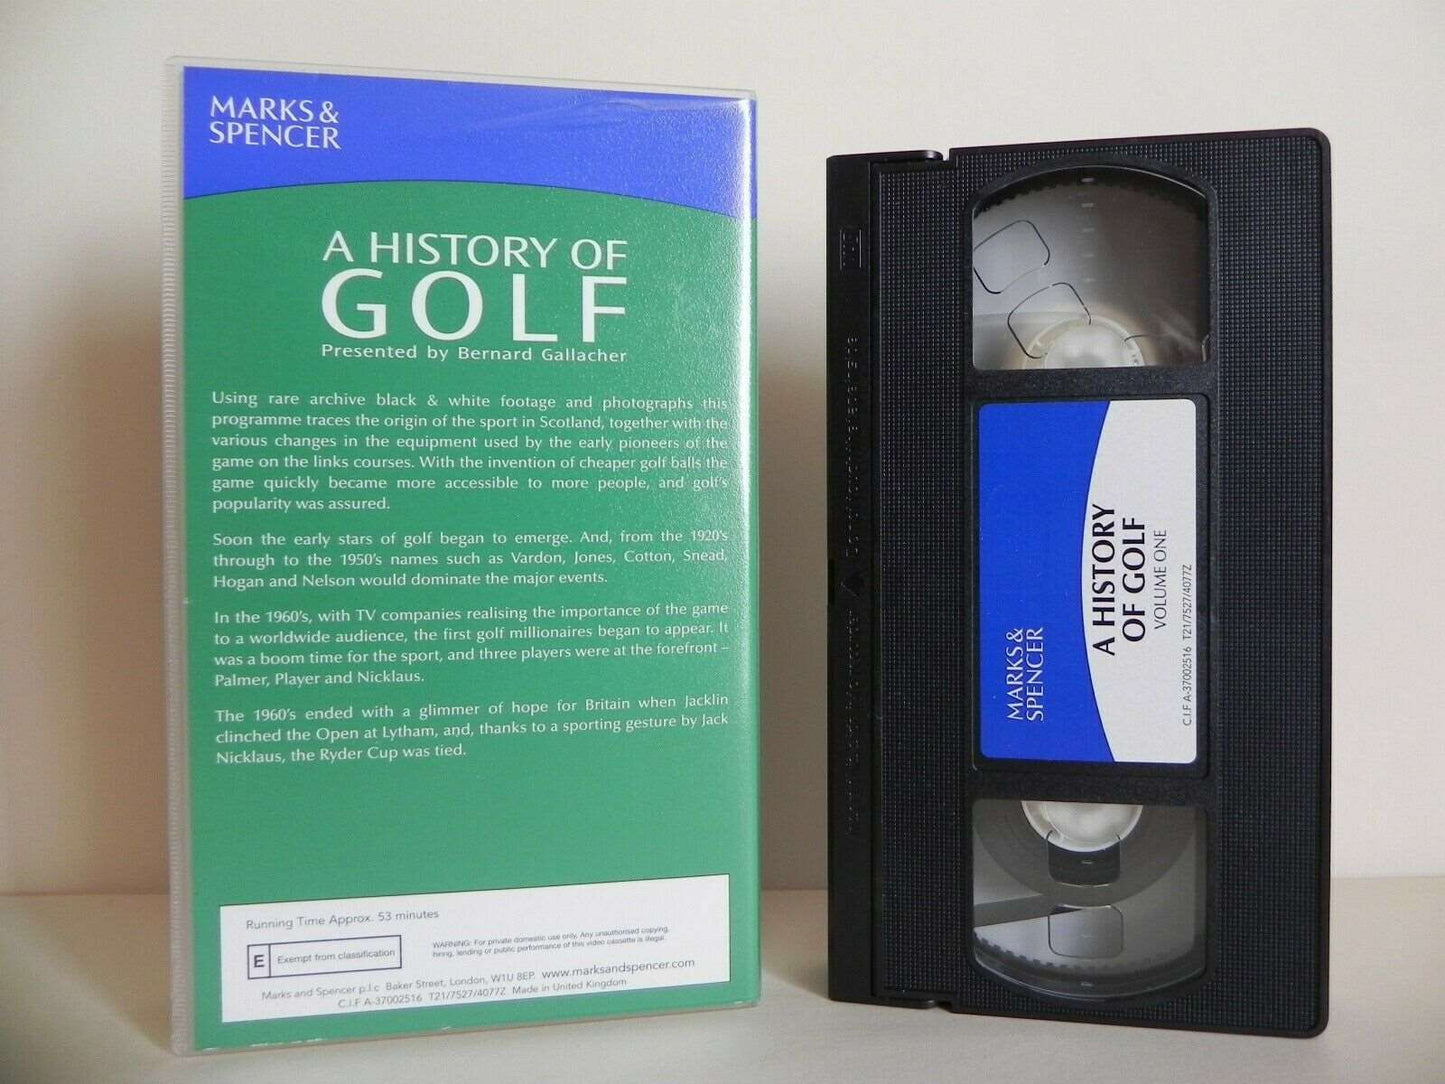 A History Of Golf: Volume One - Marks & Spencer - Bernard Gallacher - Pal VHS-